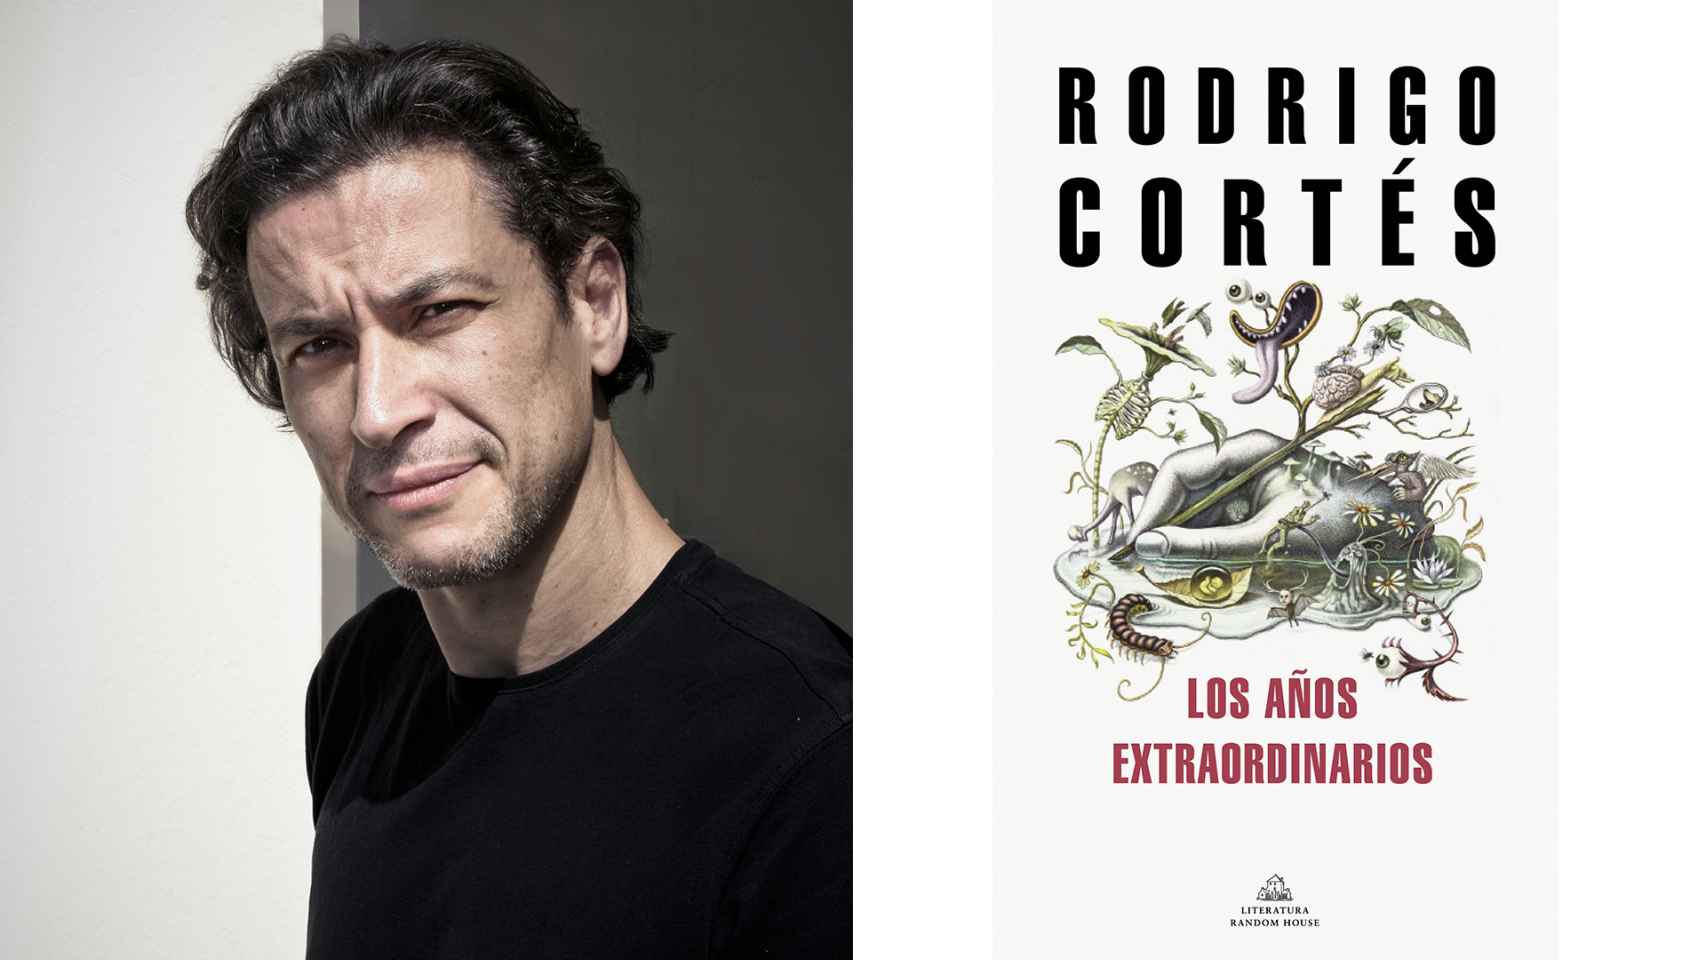 Rodrigo Cortés: La retranca gallega forma parte de mi manera de ver las cosas